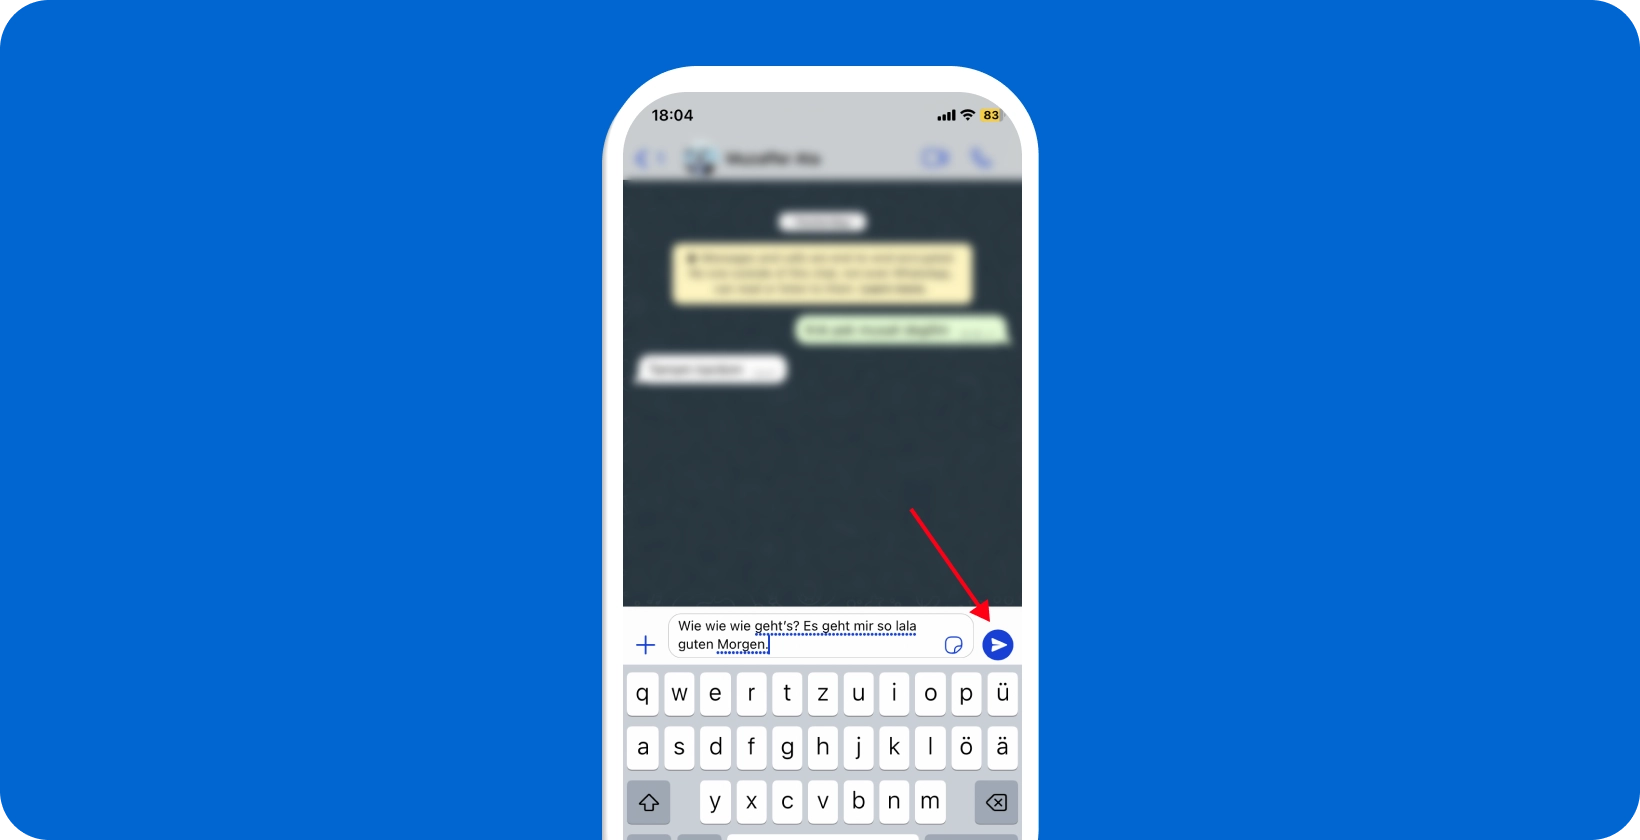 WhatsAppの音声ディクテーション機能が使用されているスマートフォン画面で、マイクアイコンが強調表示されています。